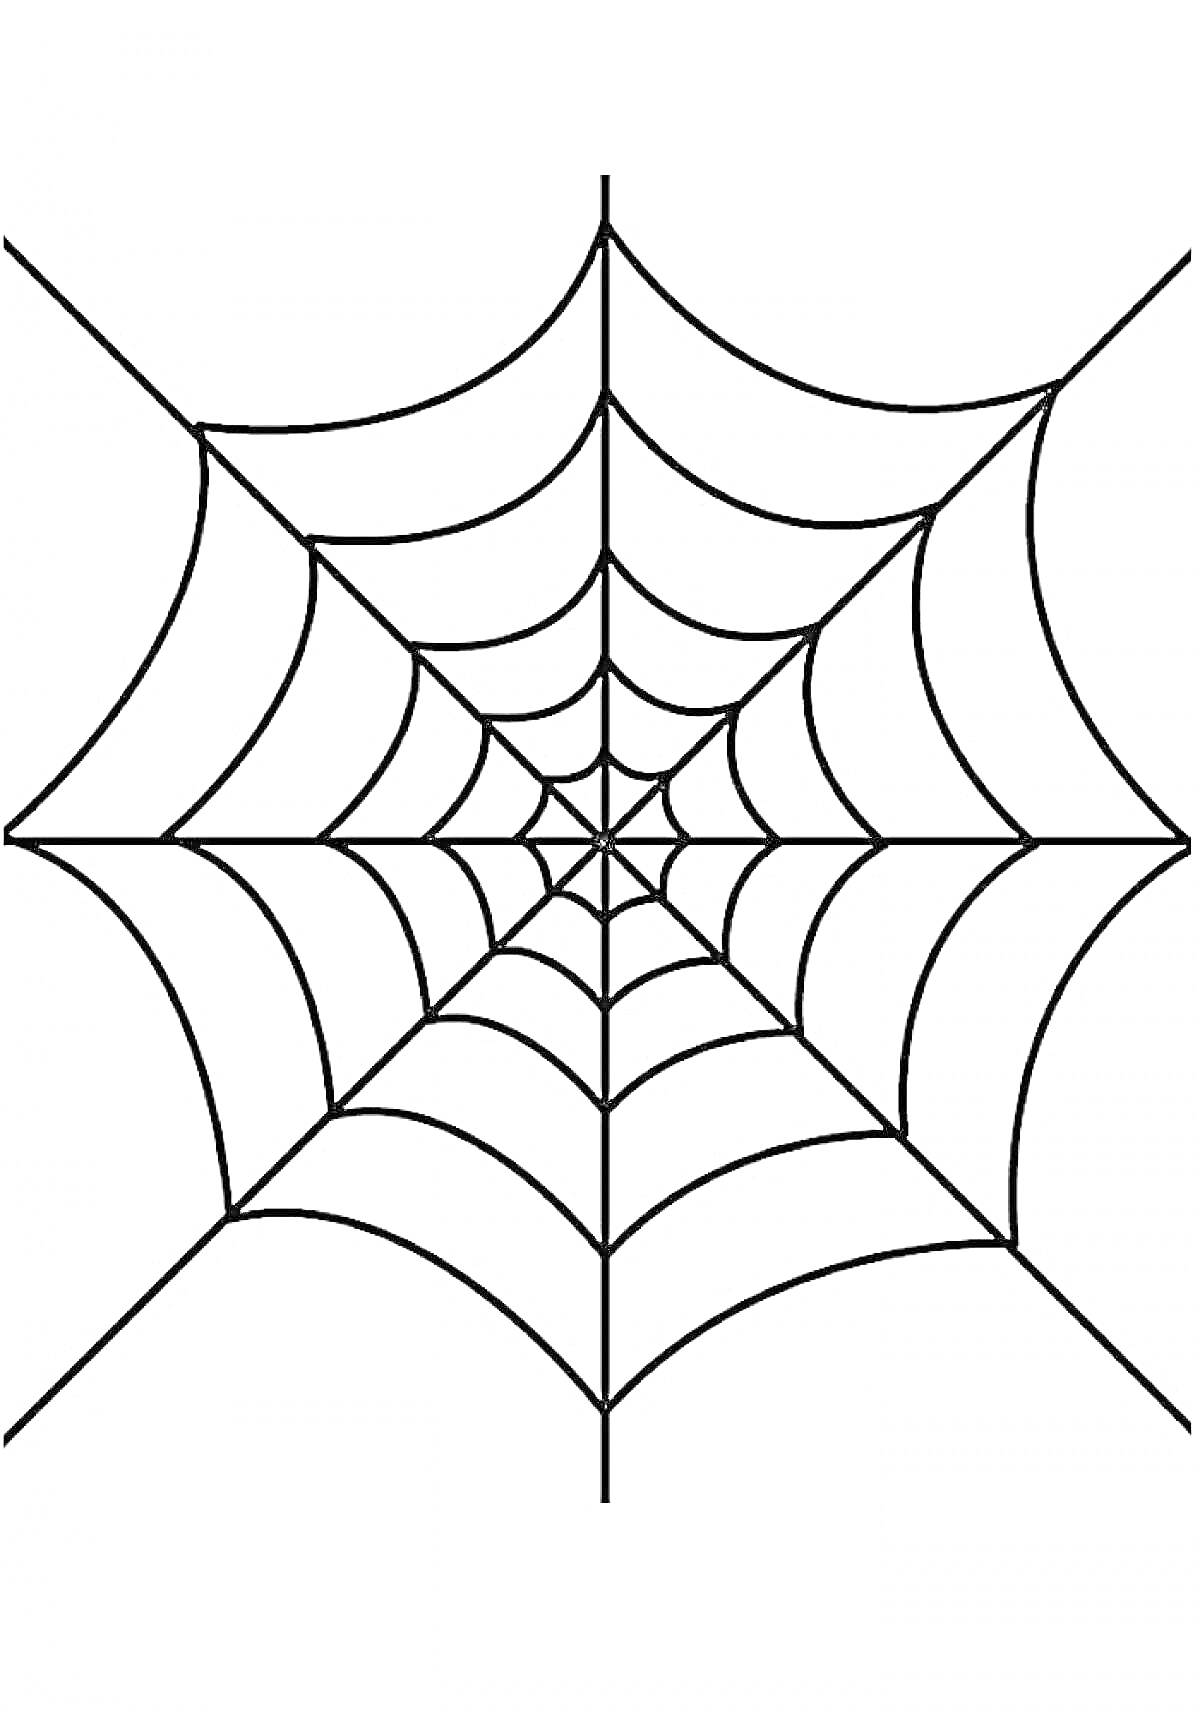 Раскраска Паутина, структурированная с концентрическими кругами и радиальными линиями